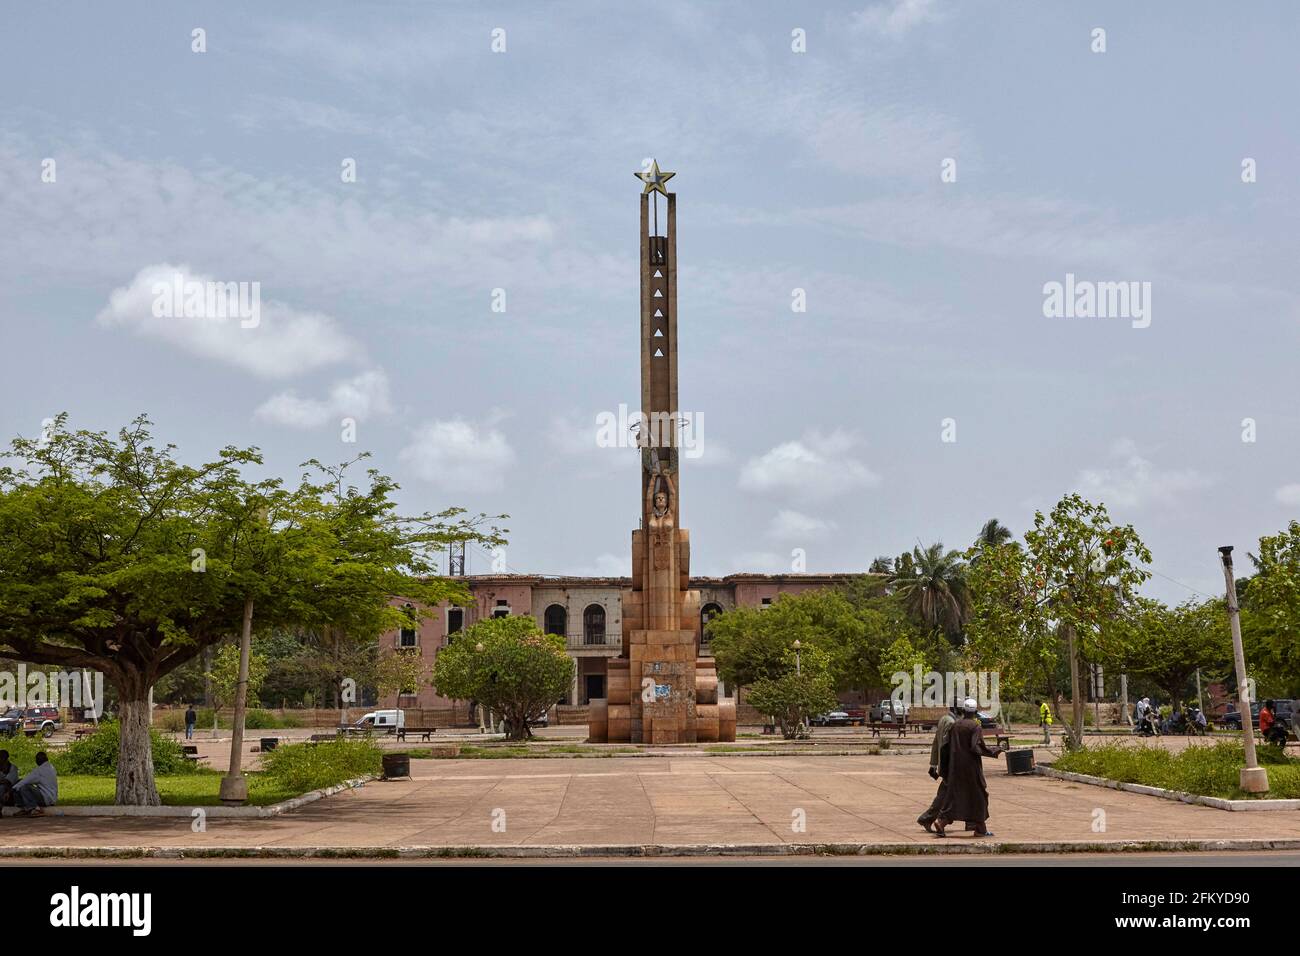 Monumento Ao Esforco Da Raca ancien palais présidentiel à Bissau Guinée-Bissau Afrique Banque D'Images